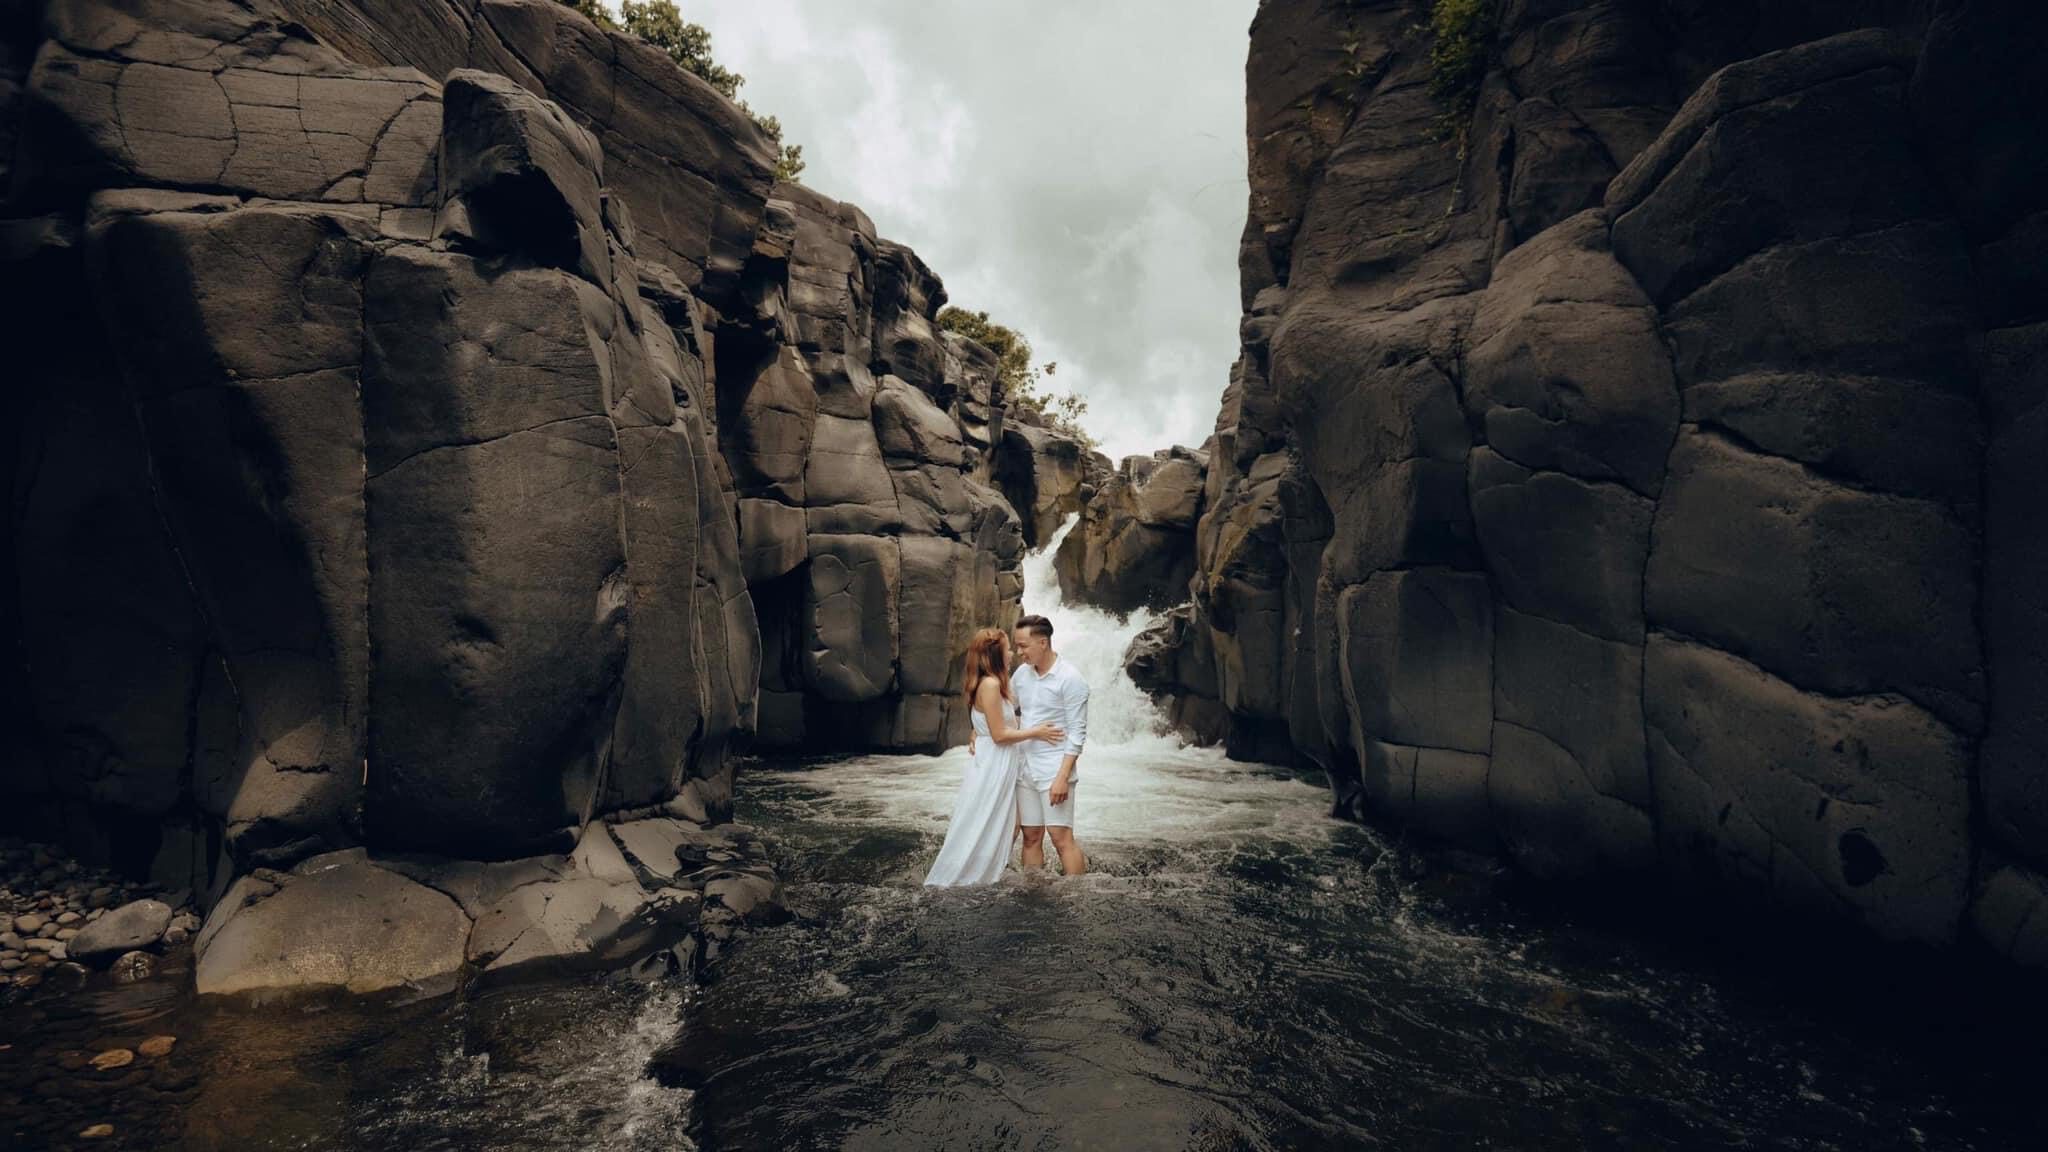 Pangadilan Falls and Rock Formation│Columbio│ Jude the Tourist